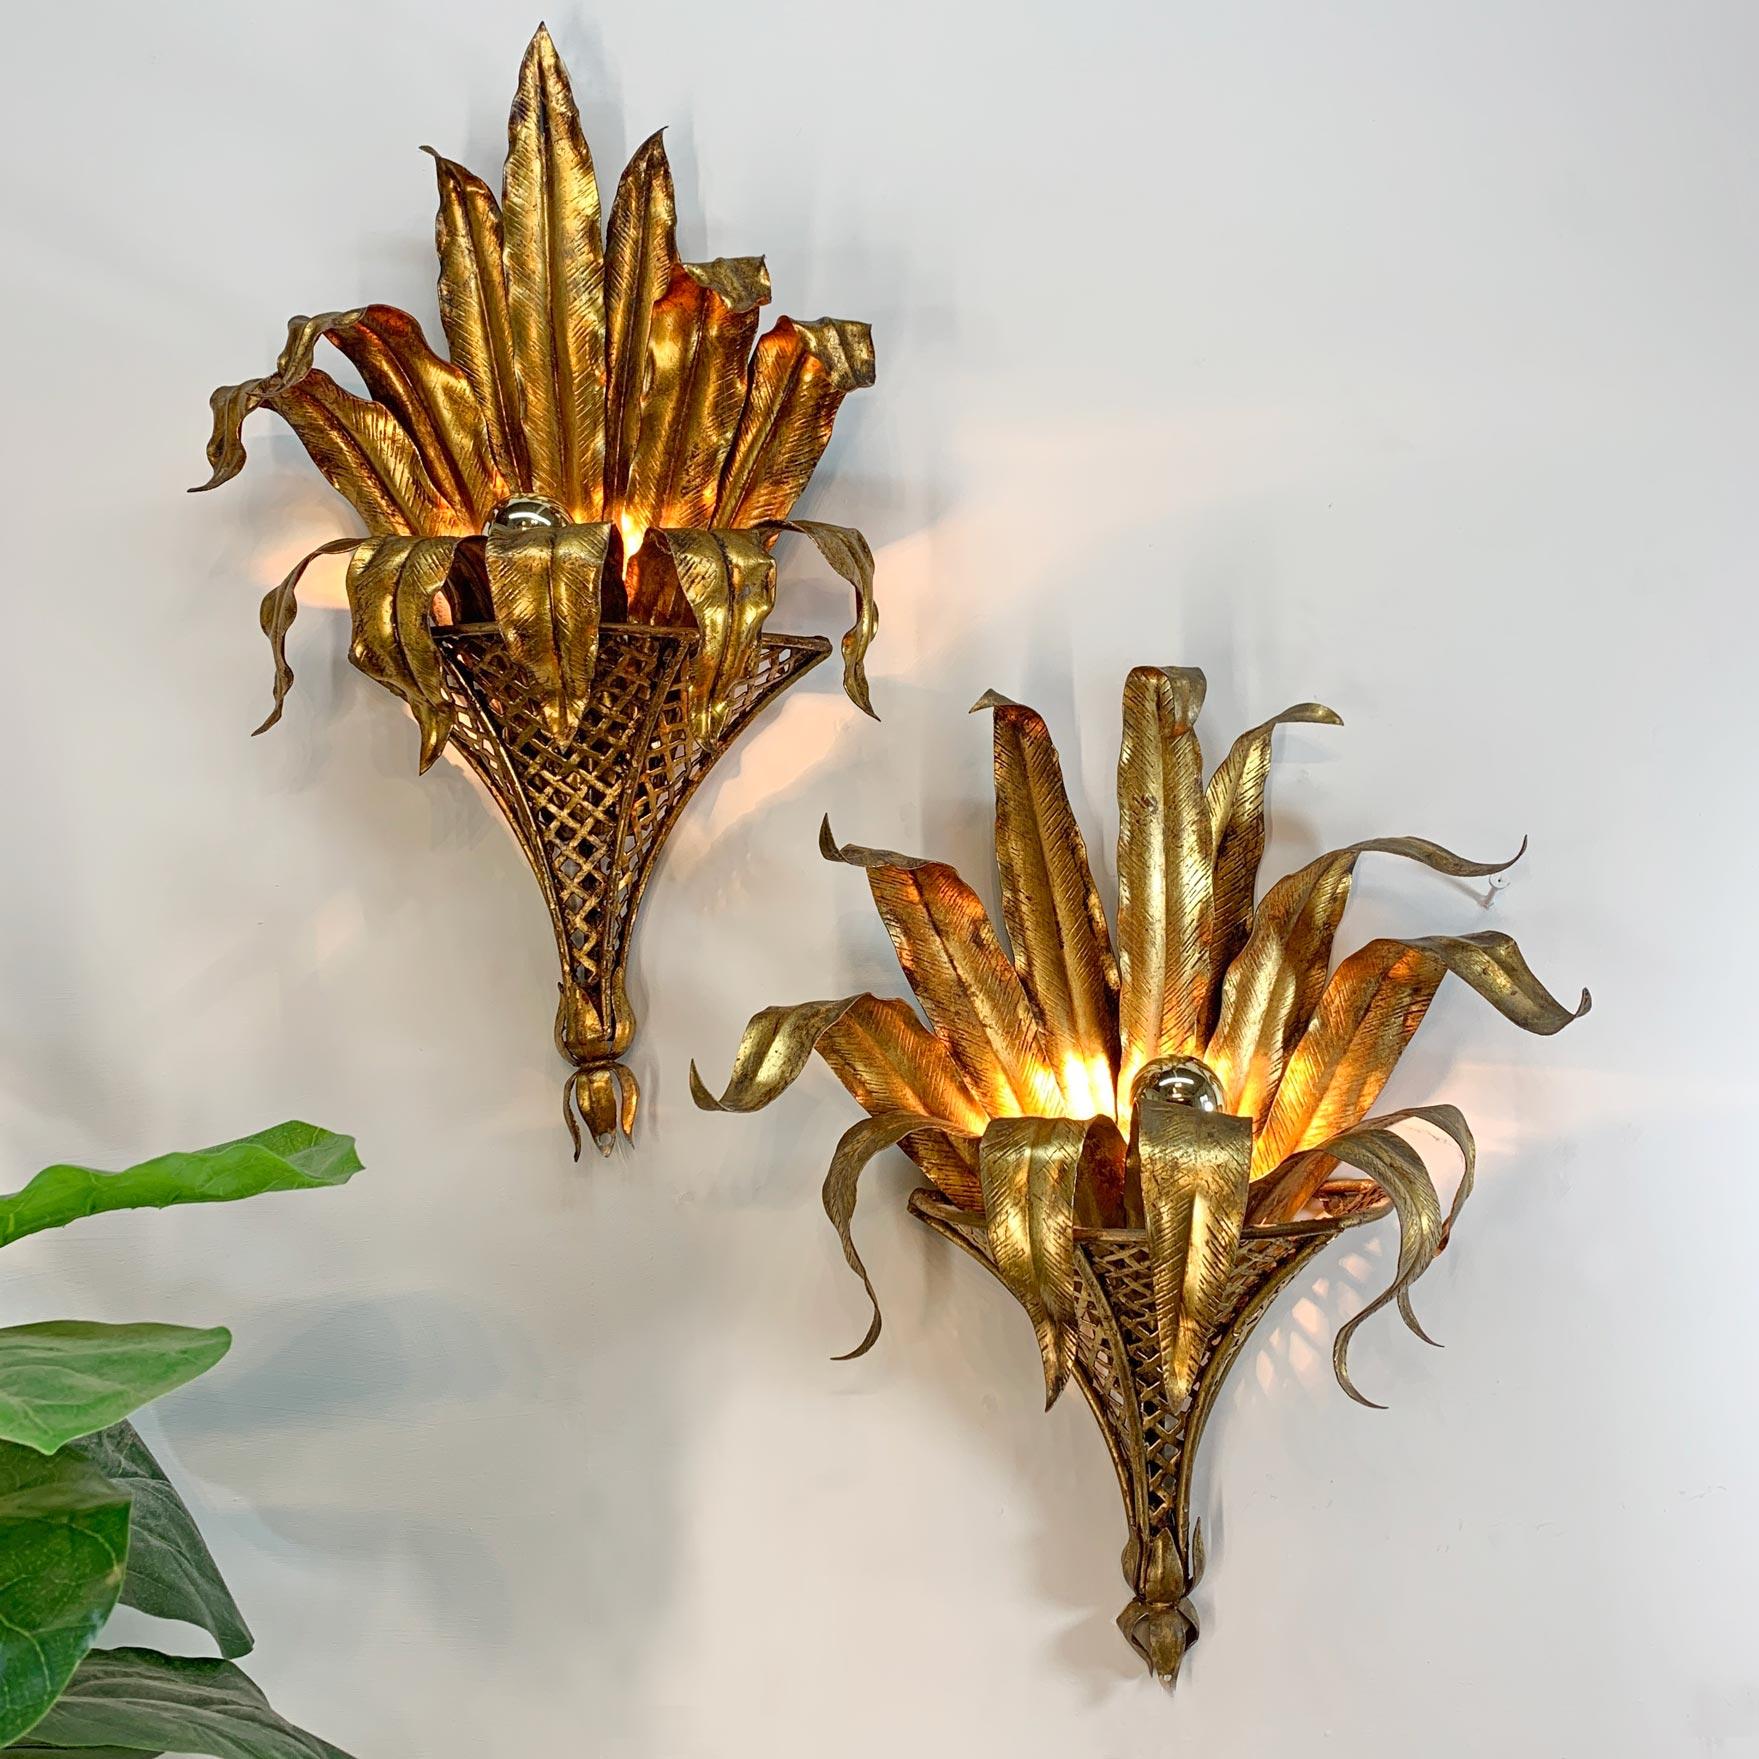 Fabuleuse paire d'appliques italiennes des années 1950, en fer doré, représentant de grandes feuilles de palmier étendues à l'intérieur d'un Coronet renversé. Légère différence dans la finition dorée due à la nature artisanale de ces superbes